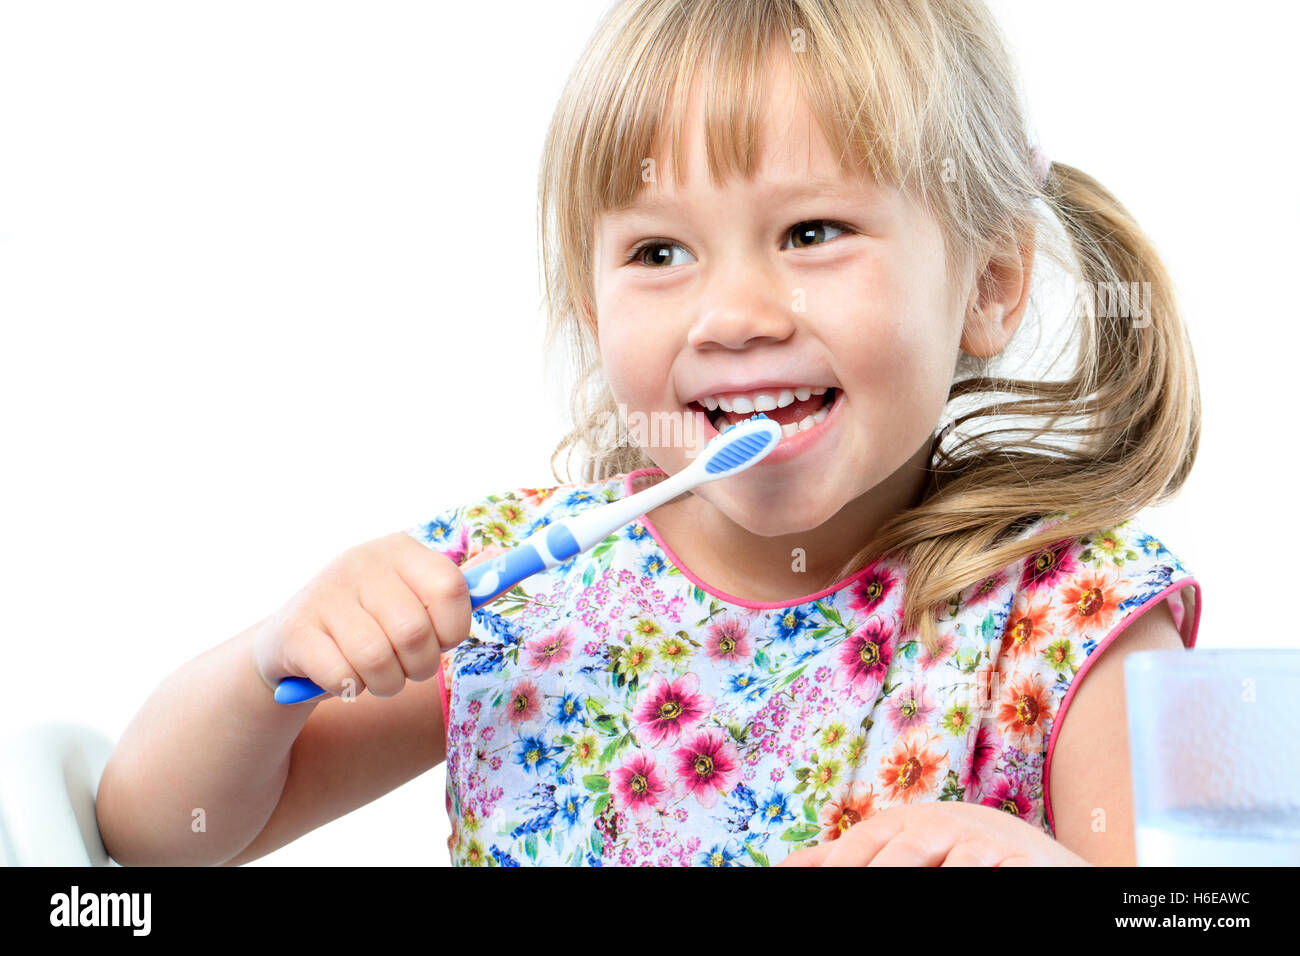 Porträt von niedlichen fünfjährigen Zähneputzen hautnah. Isoliert auf weißem Hintergrund. Stockfoto